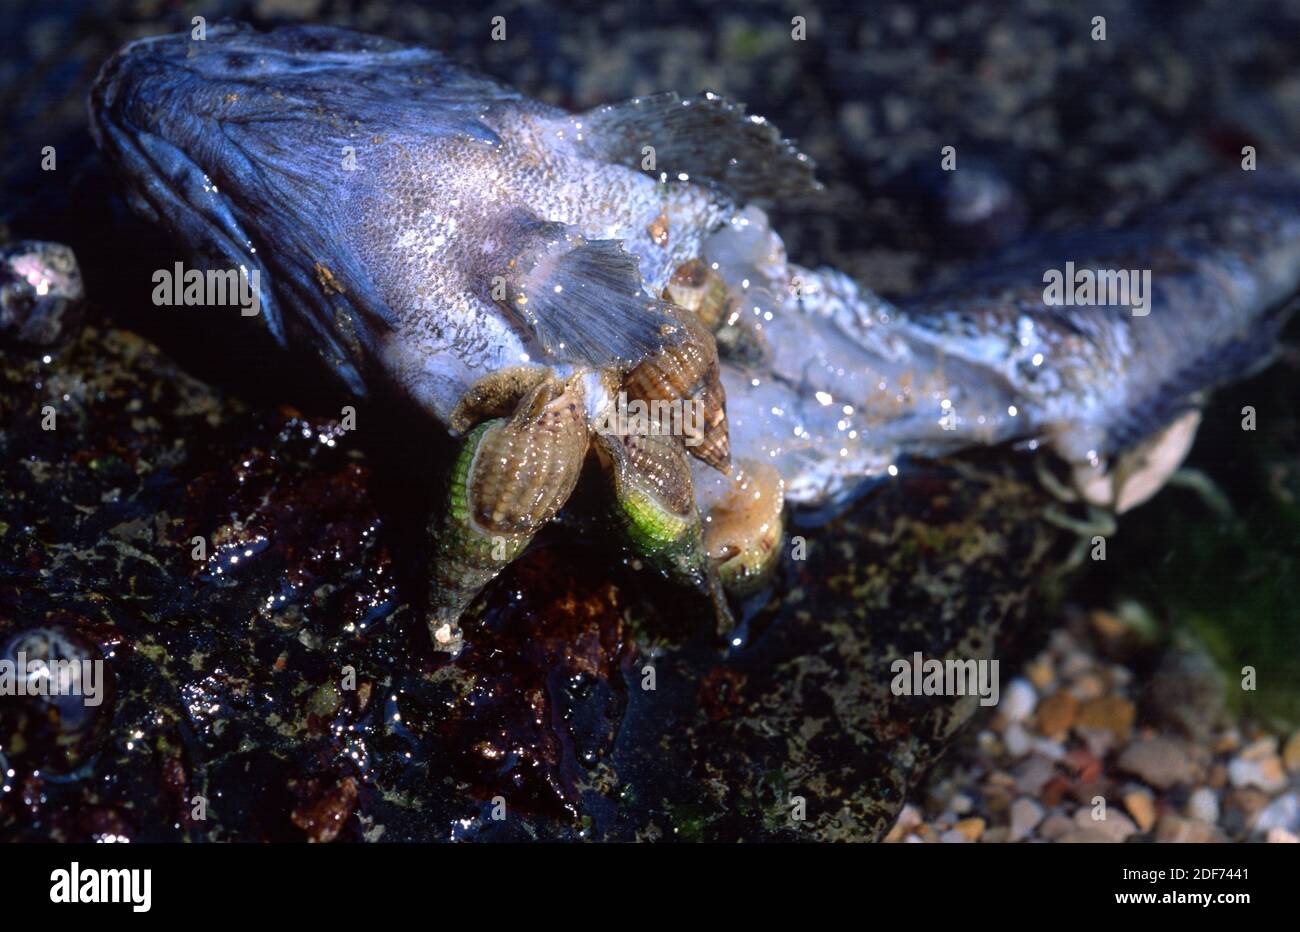 Dicklippendrüssler (Hinia incrassata oder Tritia incrassata) ist eine fleischfressende Meeresschnecke. Dieses Foto wurde in Saint Jean de Luz, Frankreich aufgenommen. Stockfoto